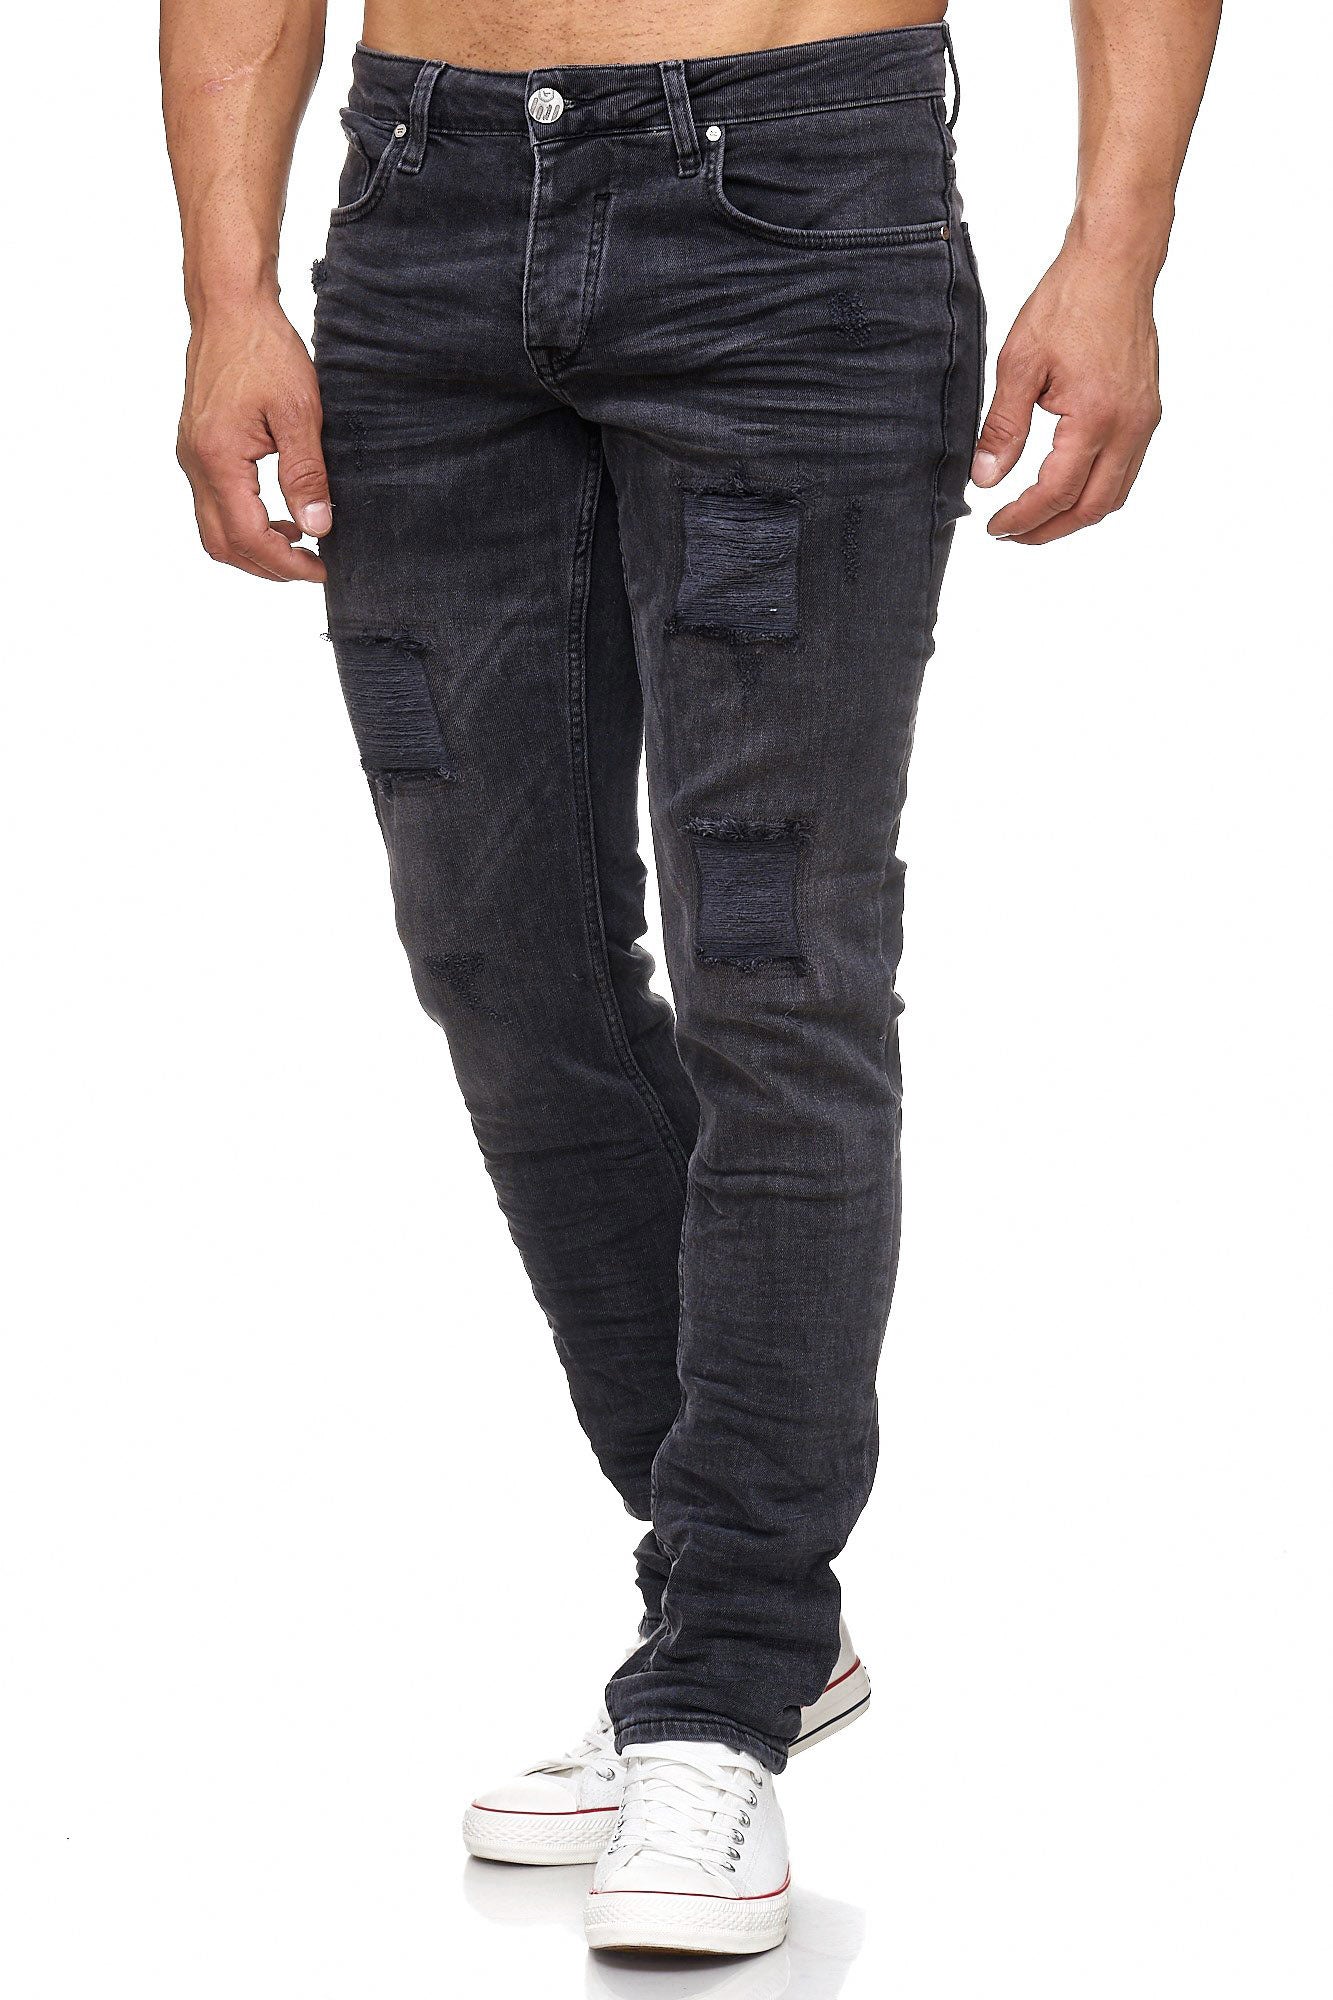 Tazzio Herren Jeans Regular Fit im Destroyed Look 17505